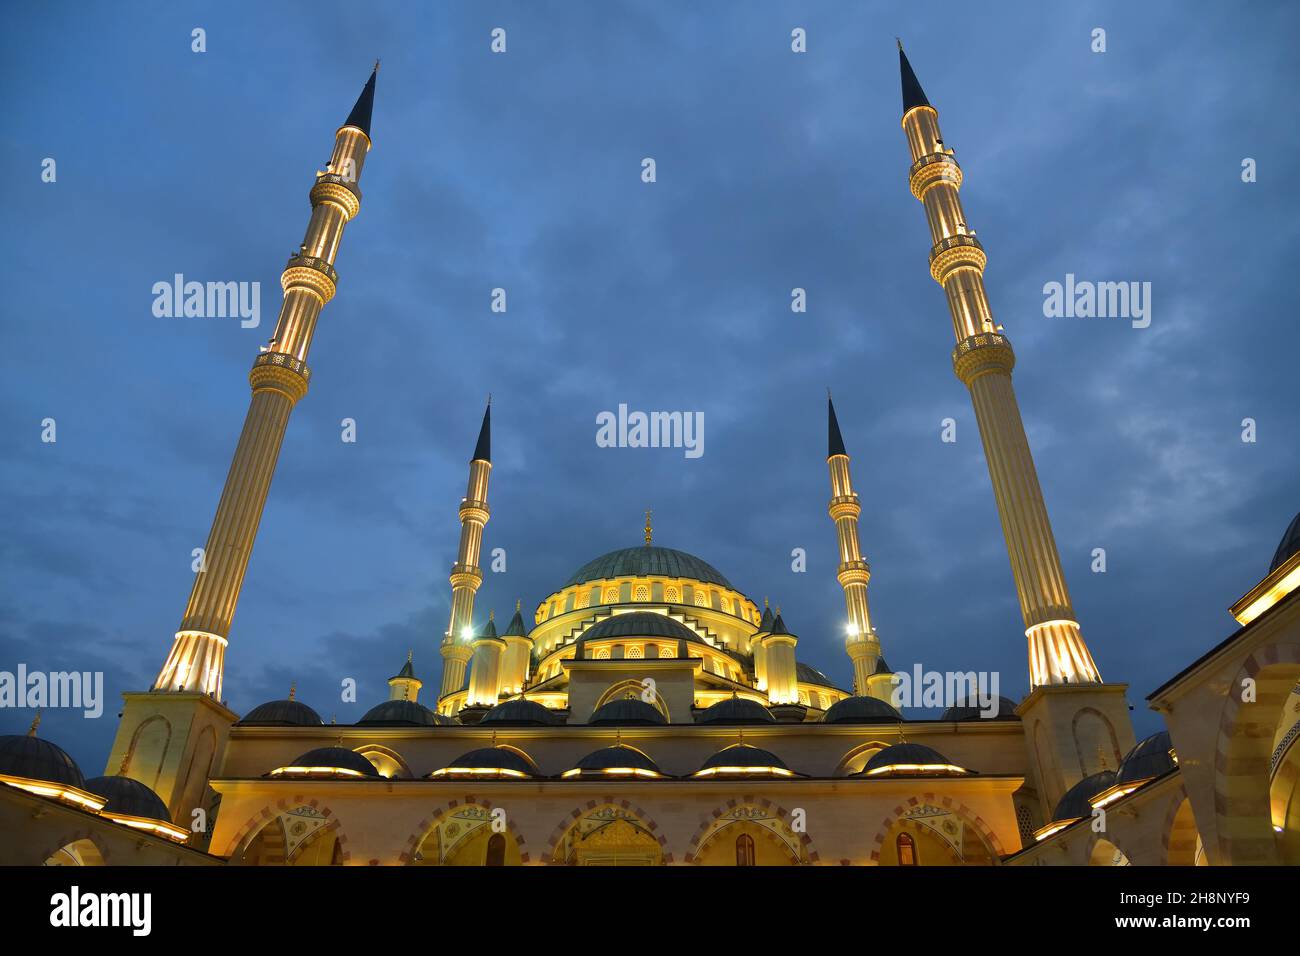 Ahmad Kadyrov Mosque Heart of Chechnya shown at night. Grozny, Chechnya, Russia Stock Photo